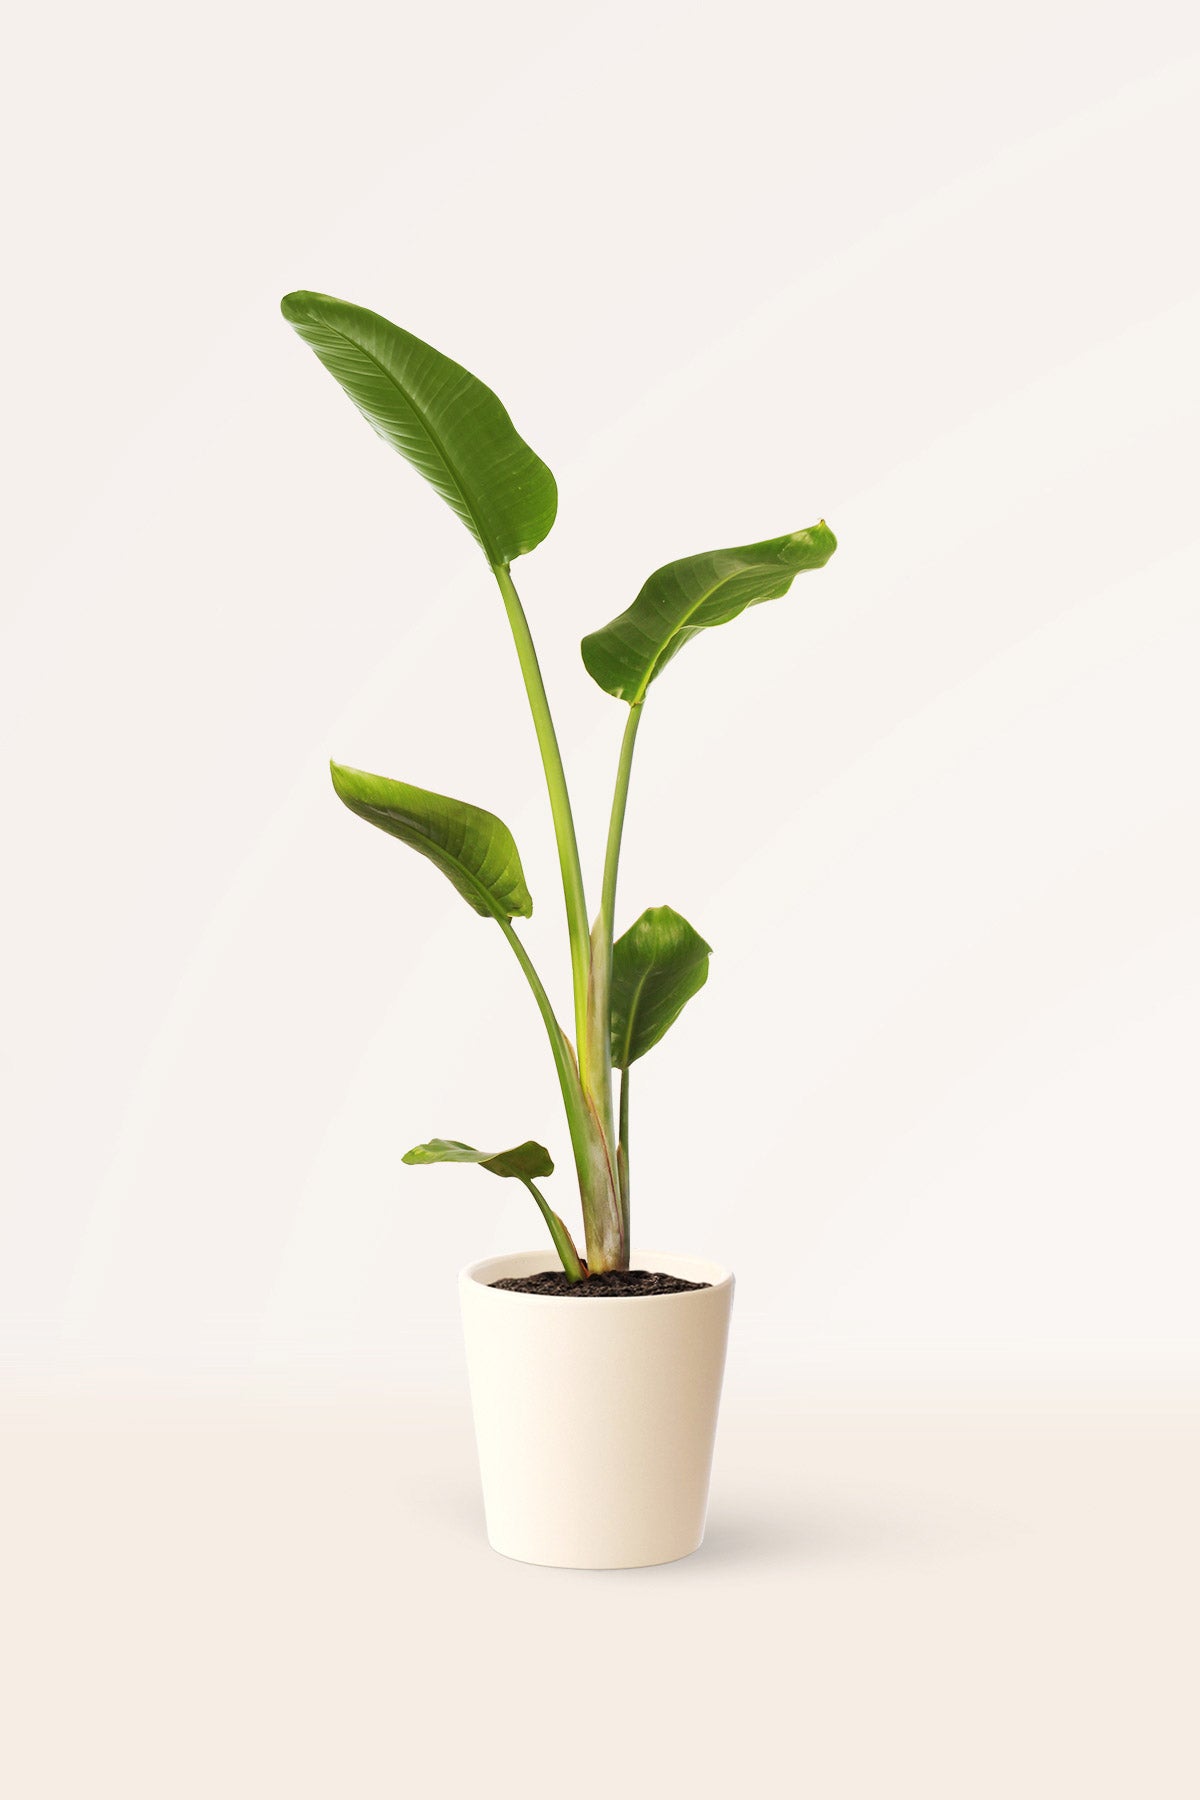 Comprar Ave del Paraiso o Strelitzia Augusta online | April Plants |  APRILPLANTS